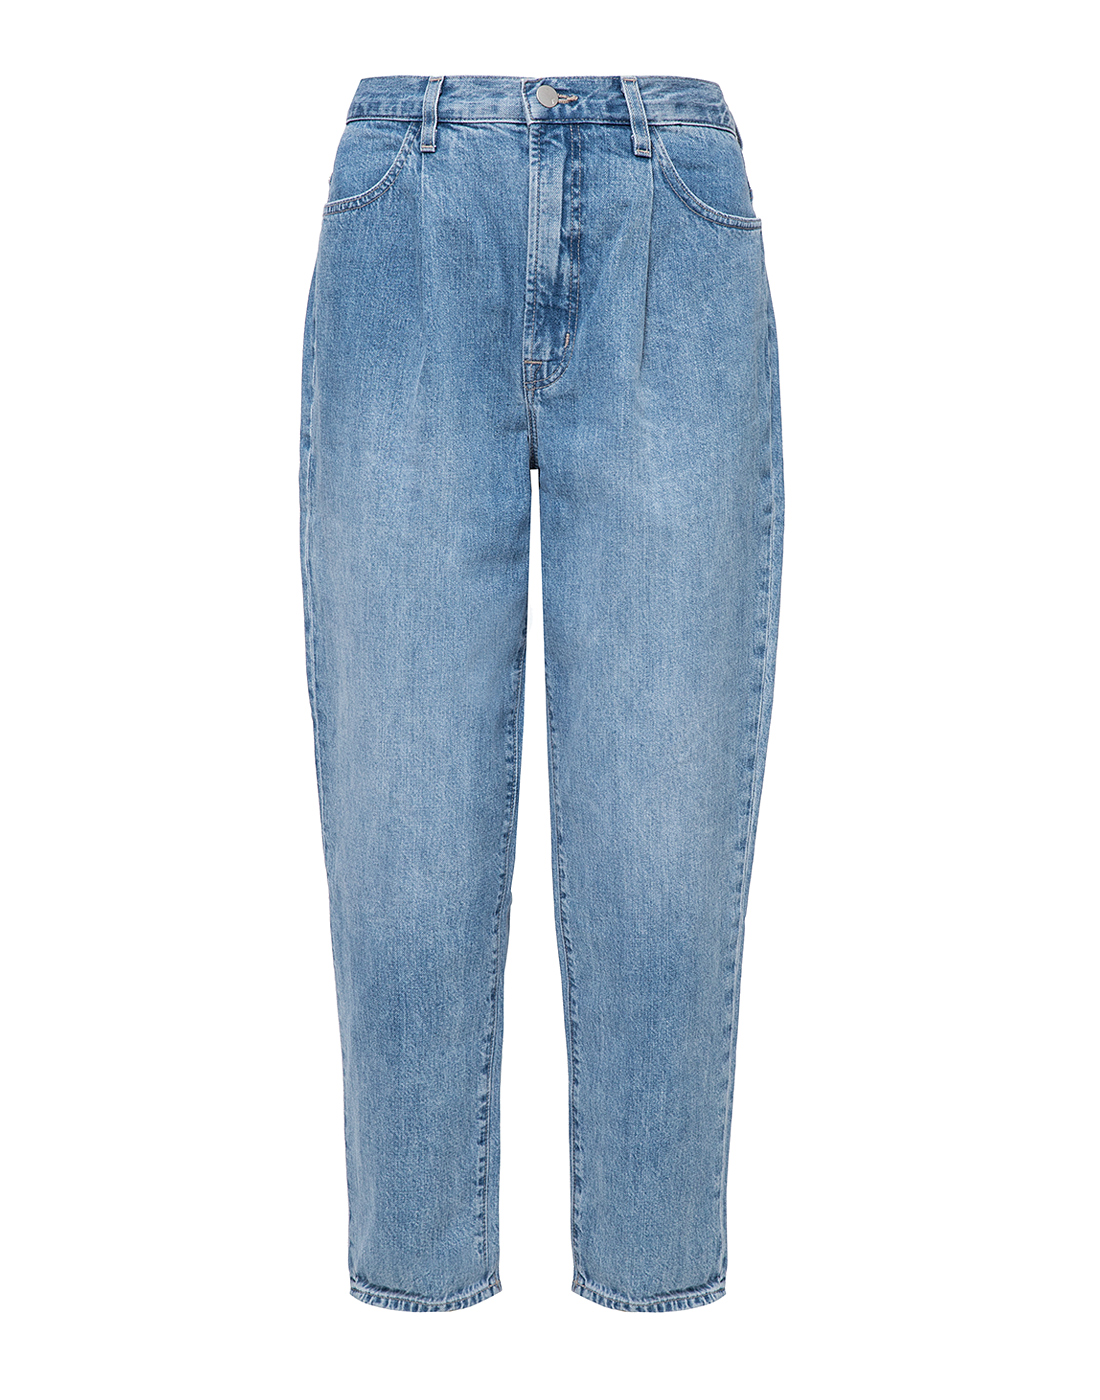 Женские голубые джинсы J BRAND SJB002860-1